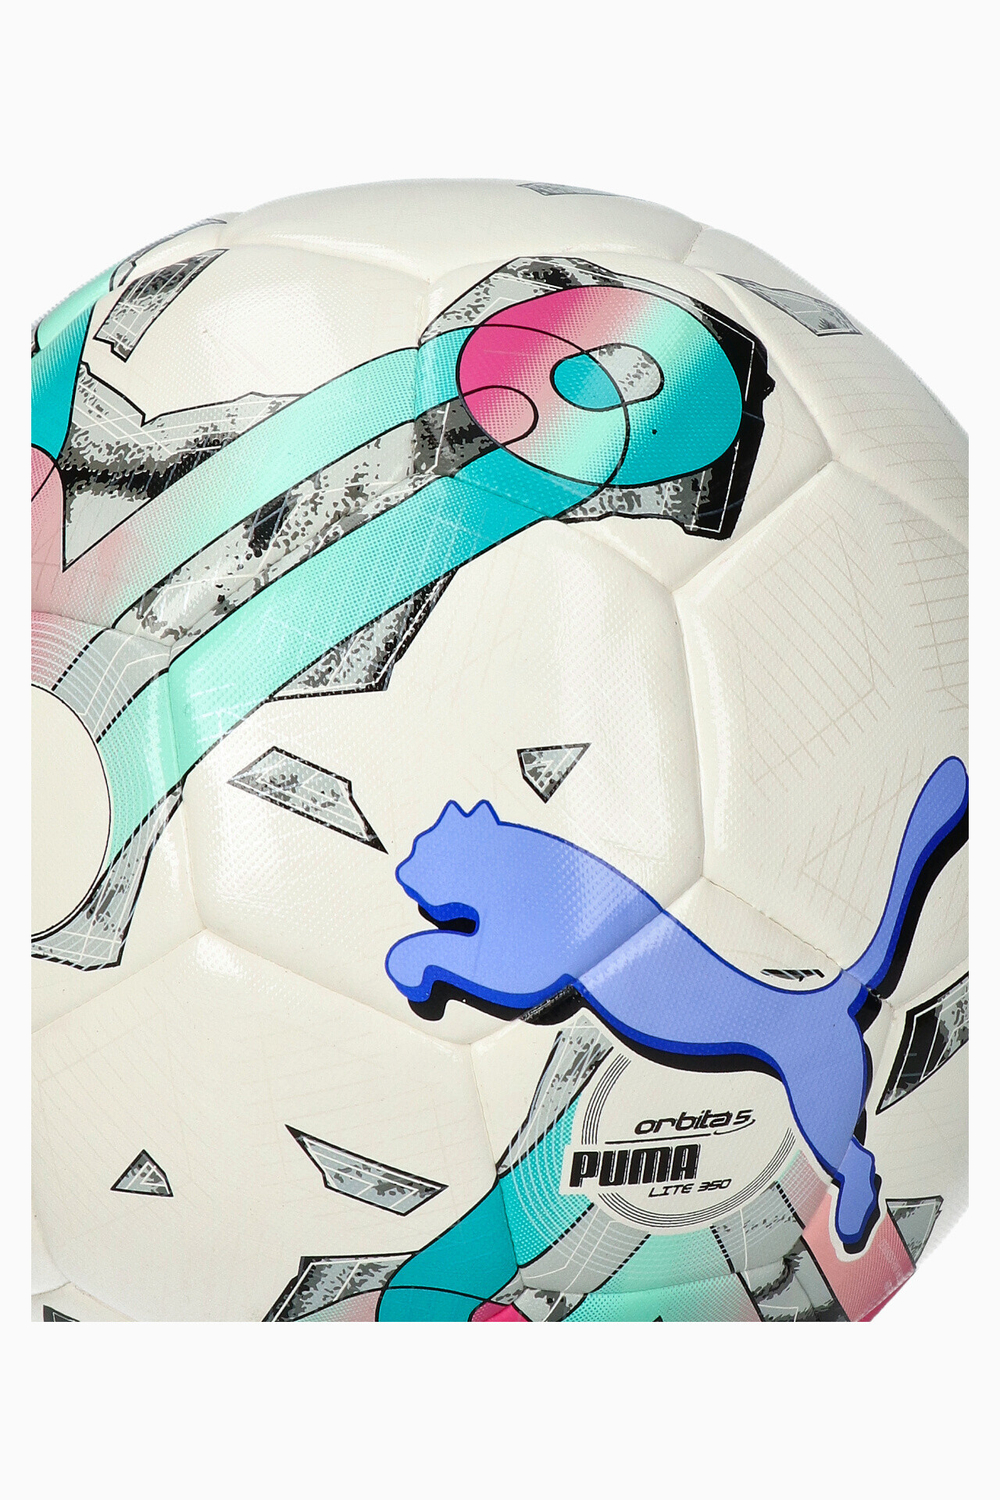 Футбольный мяч Puma Orbita 5 Hybrid Lite 350 размер 5